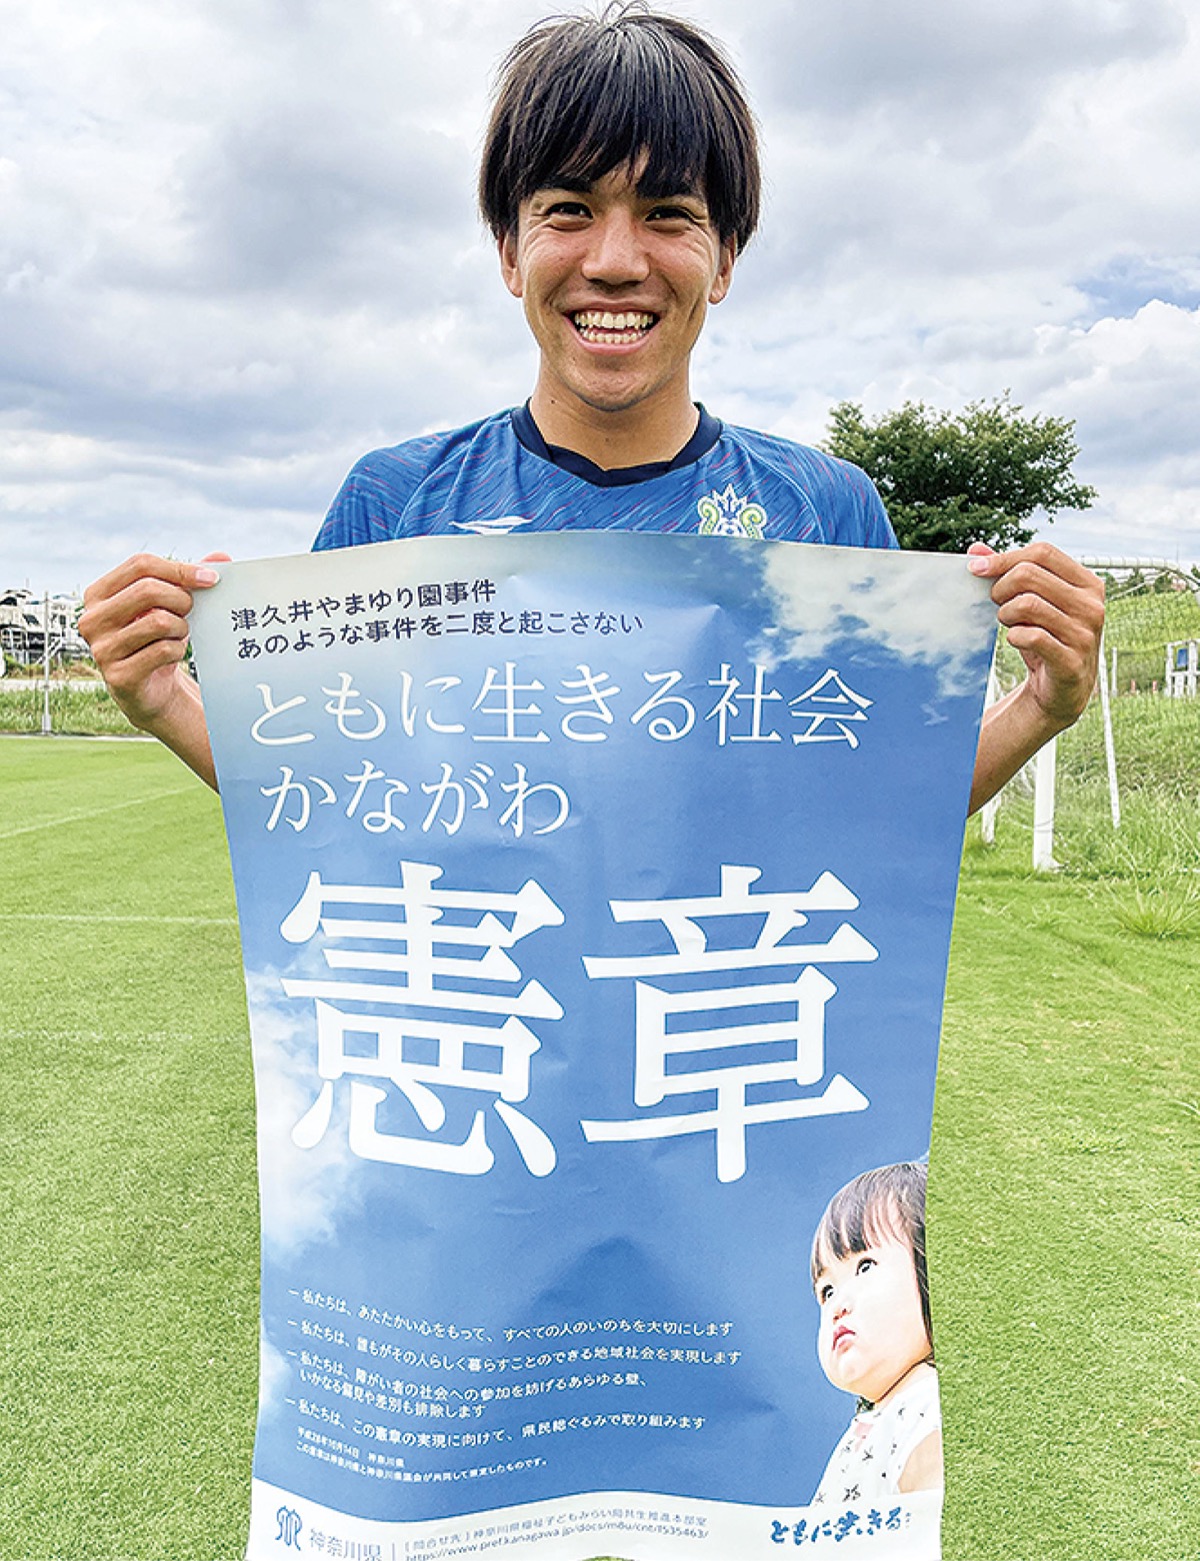 憲章ポスターを持つ田中聡選手